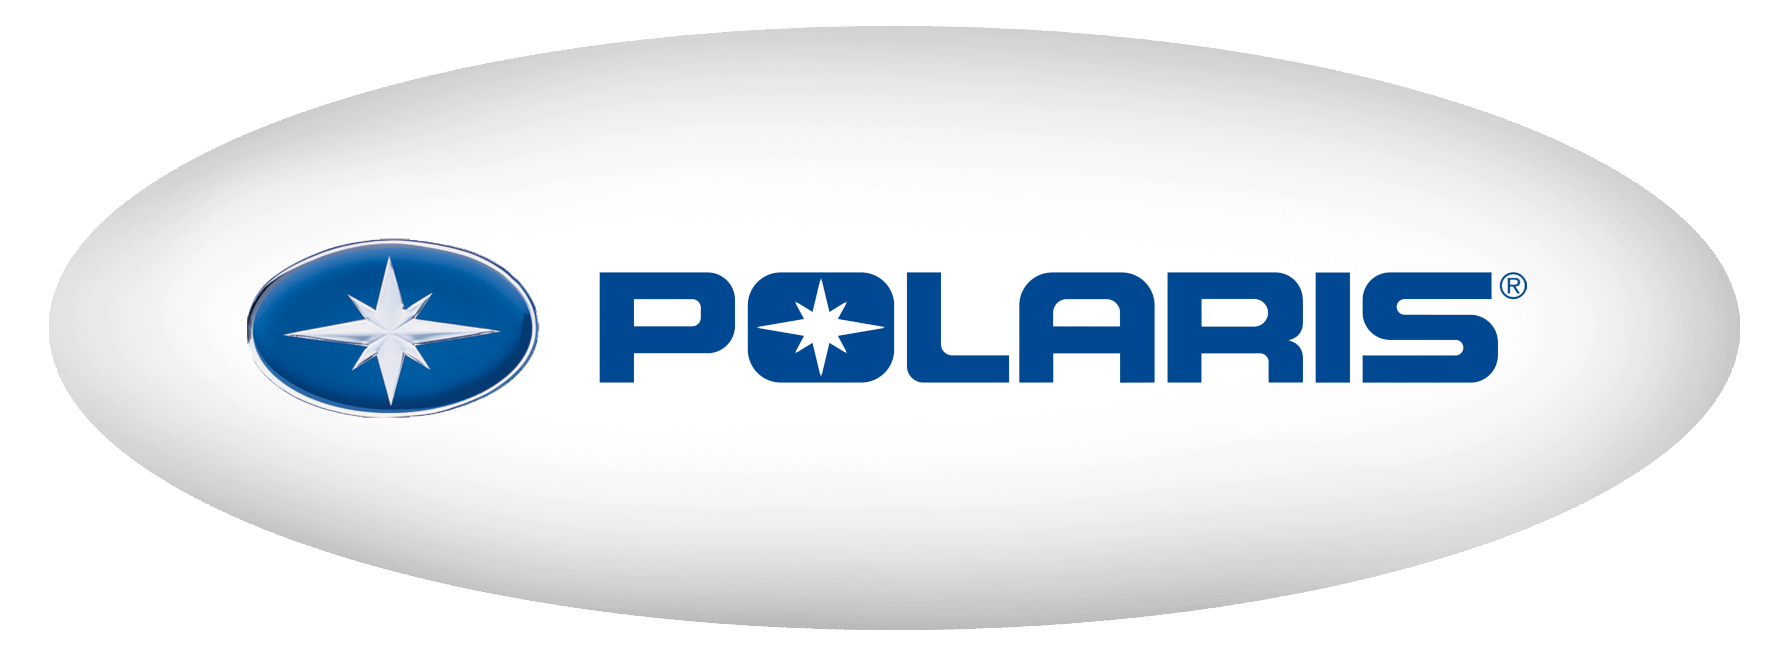 The 100 Polaris Logo - Polaris YAMAHA OF LOUISVILLE LOUISVILLE, KY (502) 254 1188